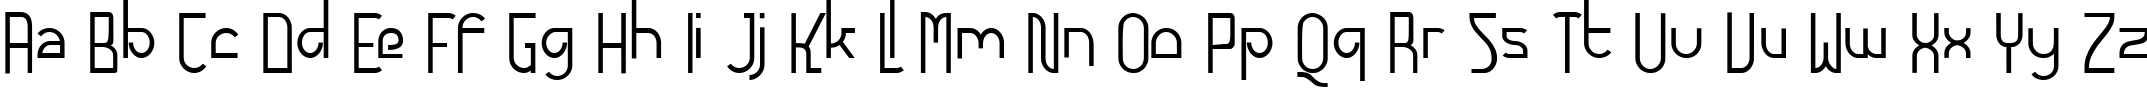 Пример написания английского алфавита шрифтом Futurex - AlternatLC